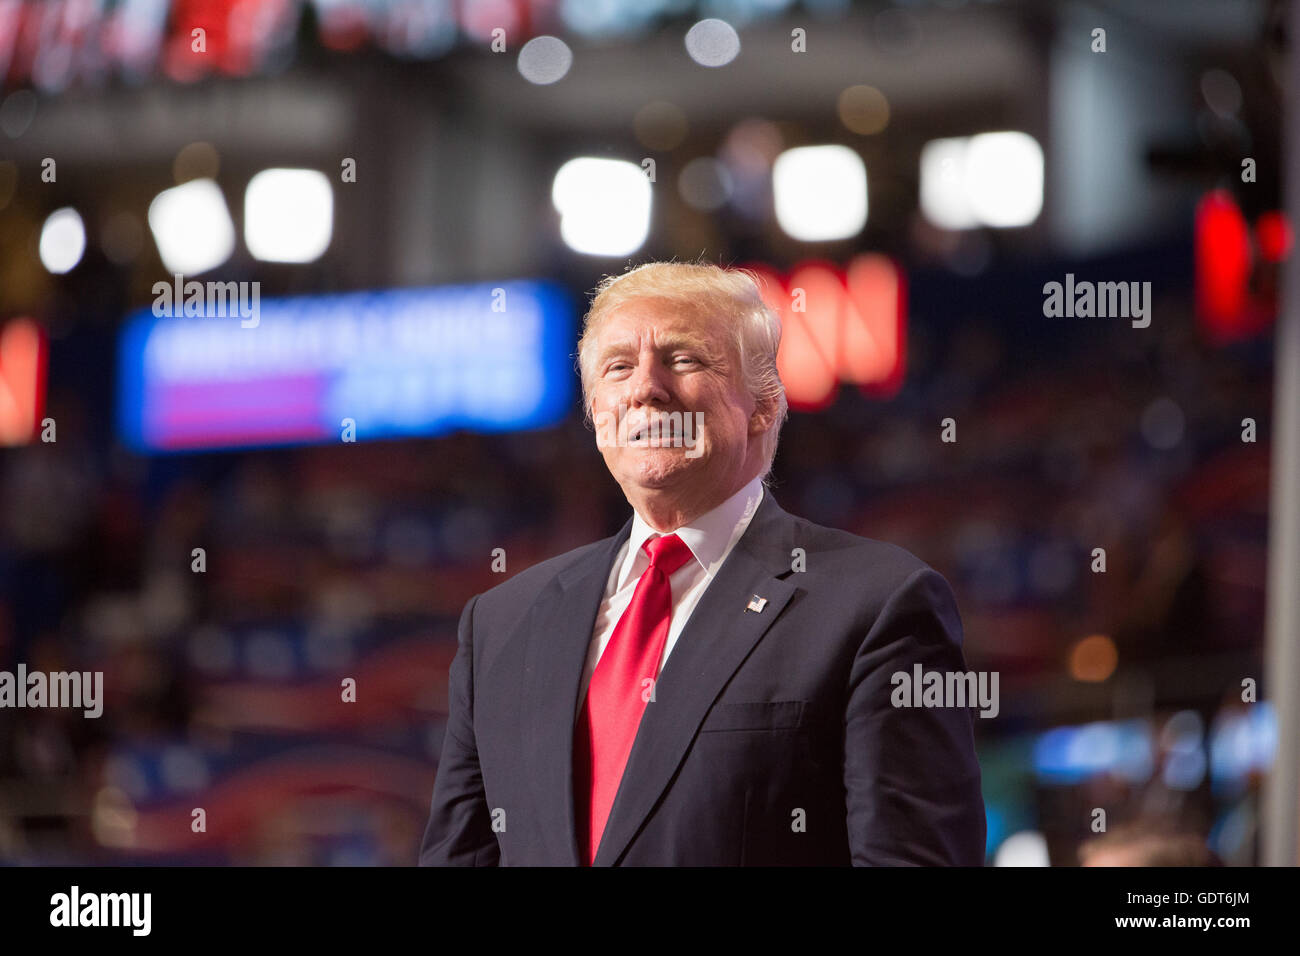 Cleveland, Ohio, USA ; Juillet 21, 2016 : Donald J. Trump accepte sa nomination à courir pour le président à la Convention Nationale Républicaine. (Philip Scalia/Alamy Live News) Banque D'Images